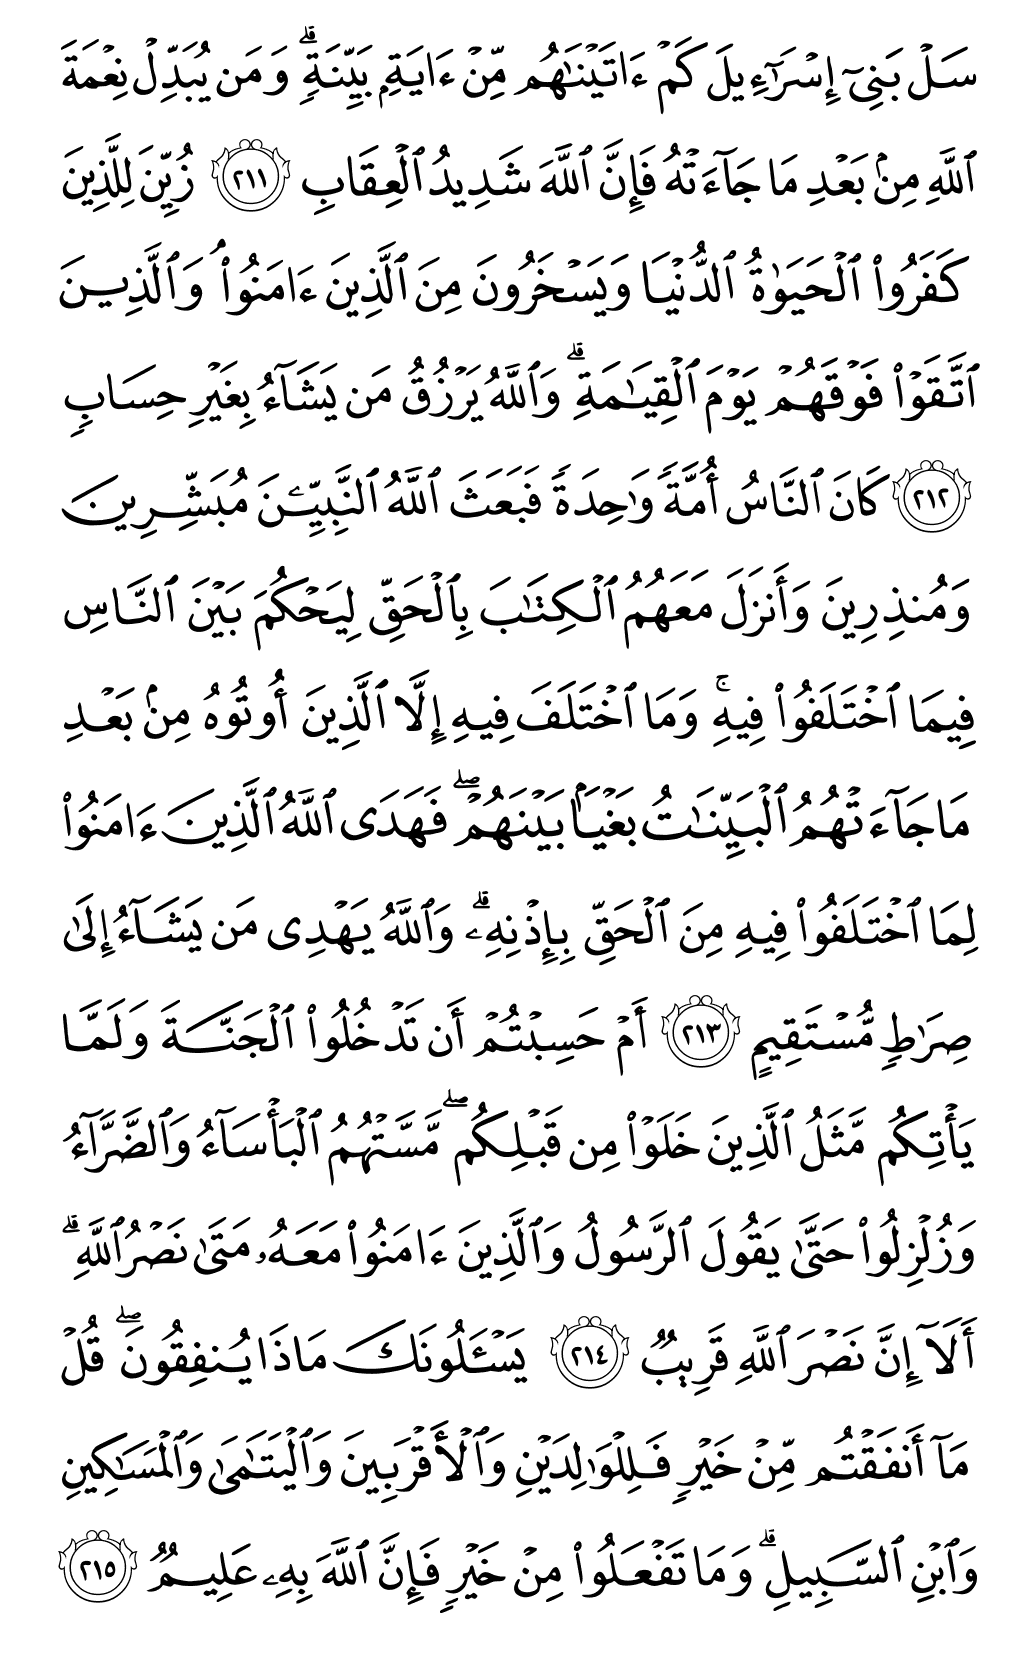 الصفحة رقم 33 من القرآن الكريم